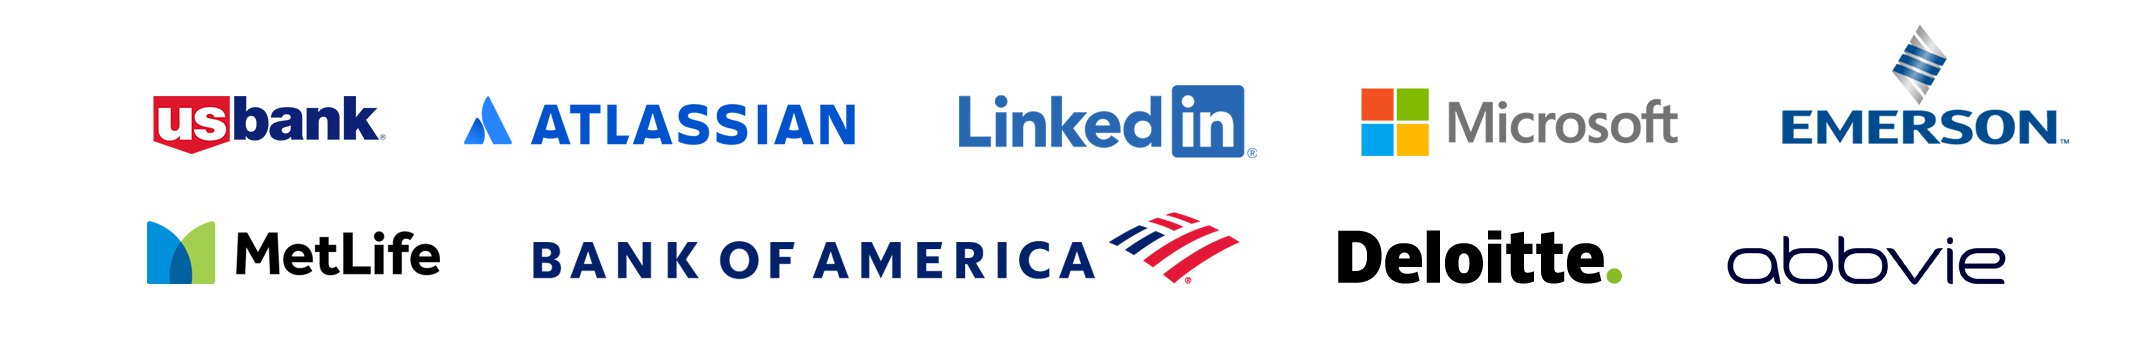 usbank, Atlassian, LinkedIn, Microsoft, MetLife, Bank of America, Deloitte, AbbVie, Emerson